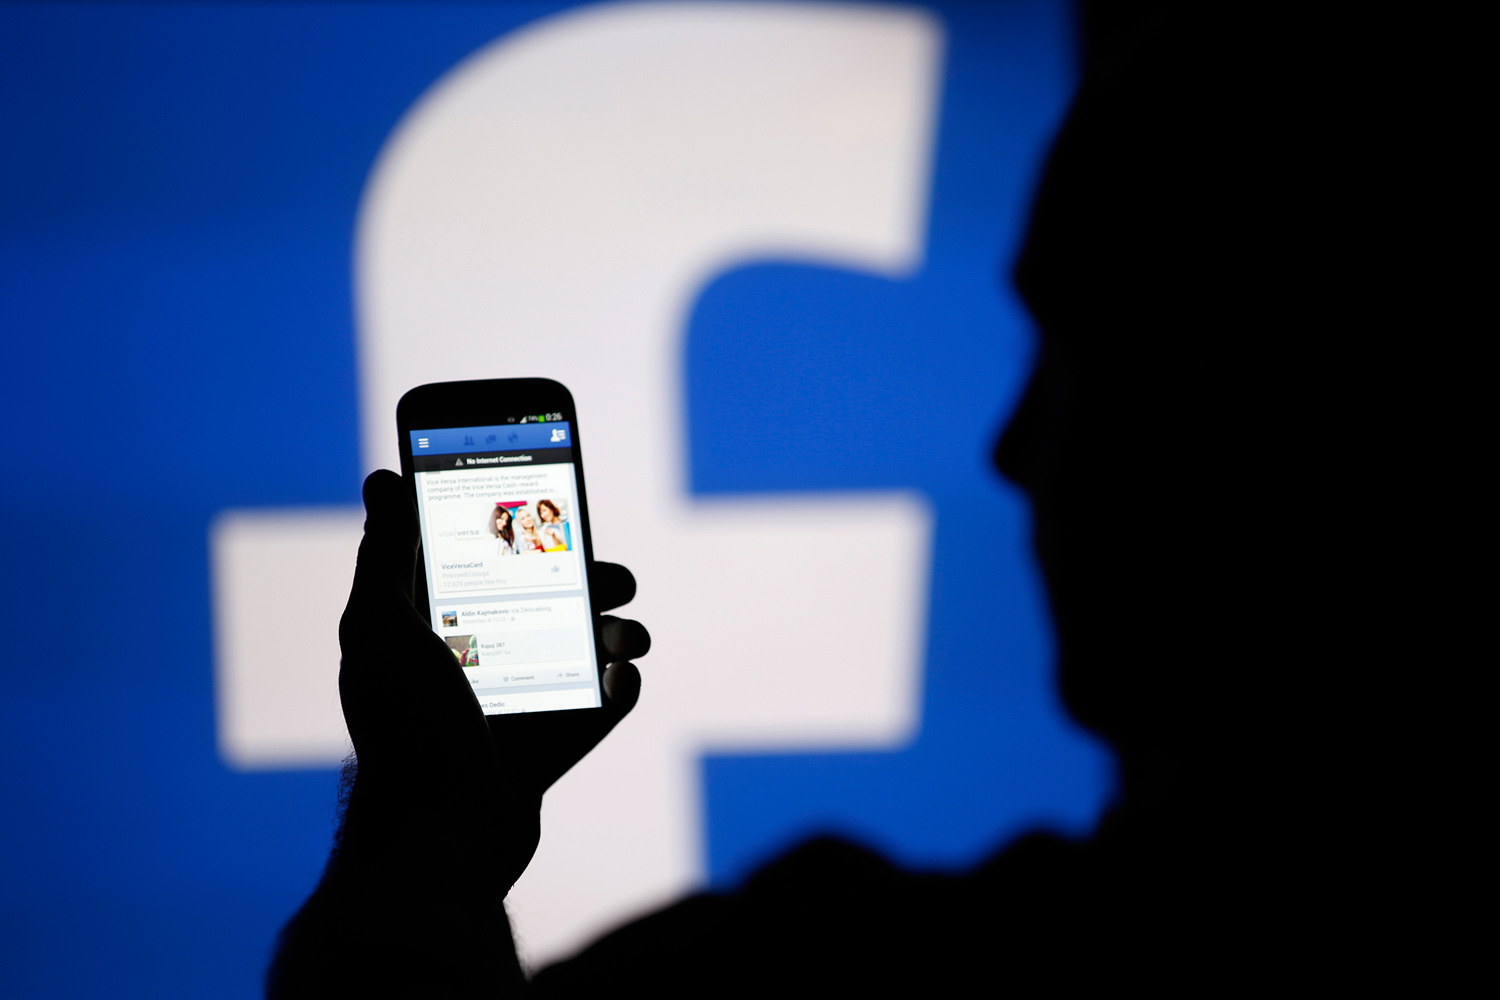 La publicidad en móviles dispara los beneficios de Facebook